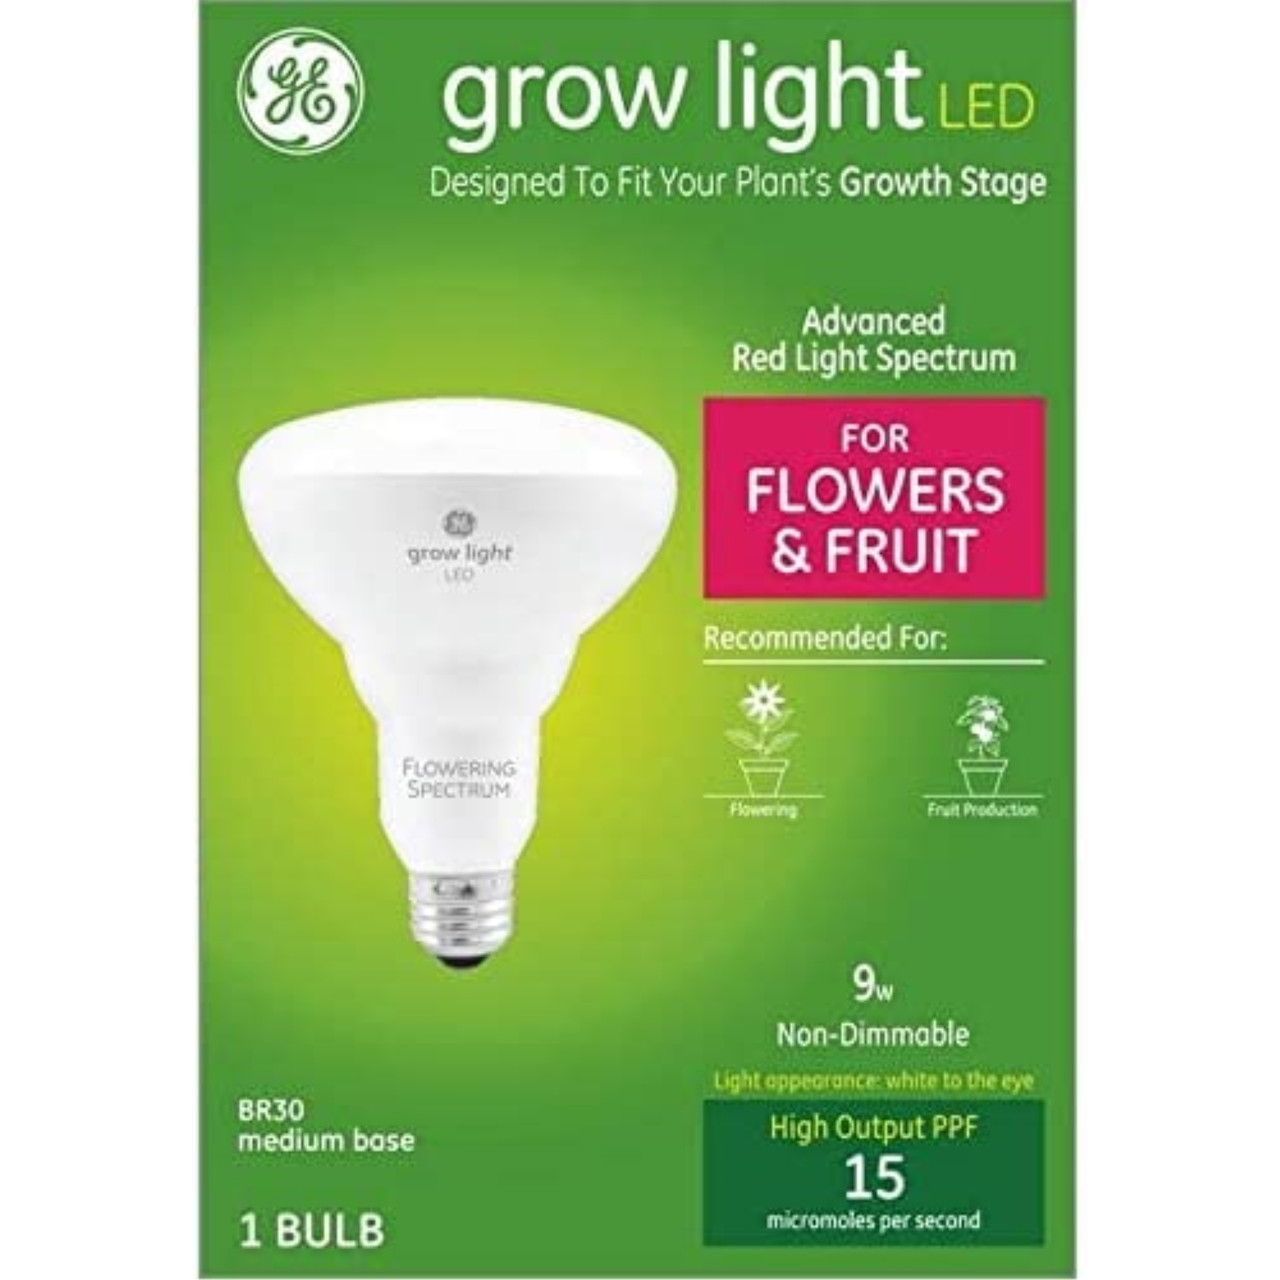 GE Grow Light LED Flood Light Bulb, Advanced Red Spectrum for Flowers and Fruit, 9 Medium Base (Pack of 1) - Esbenshades